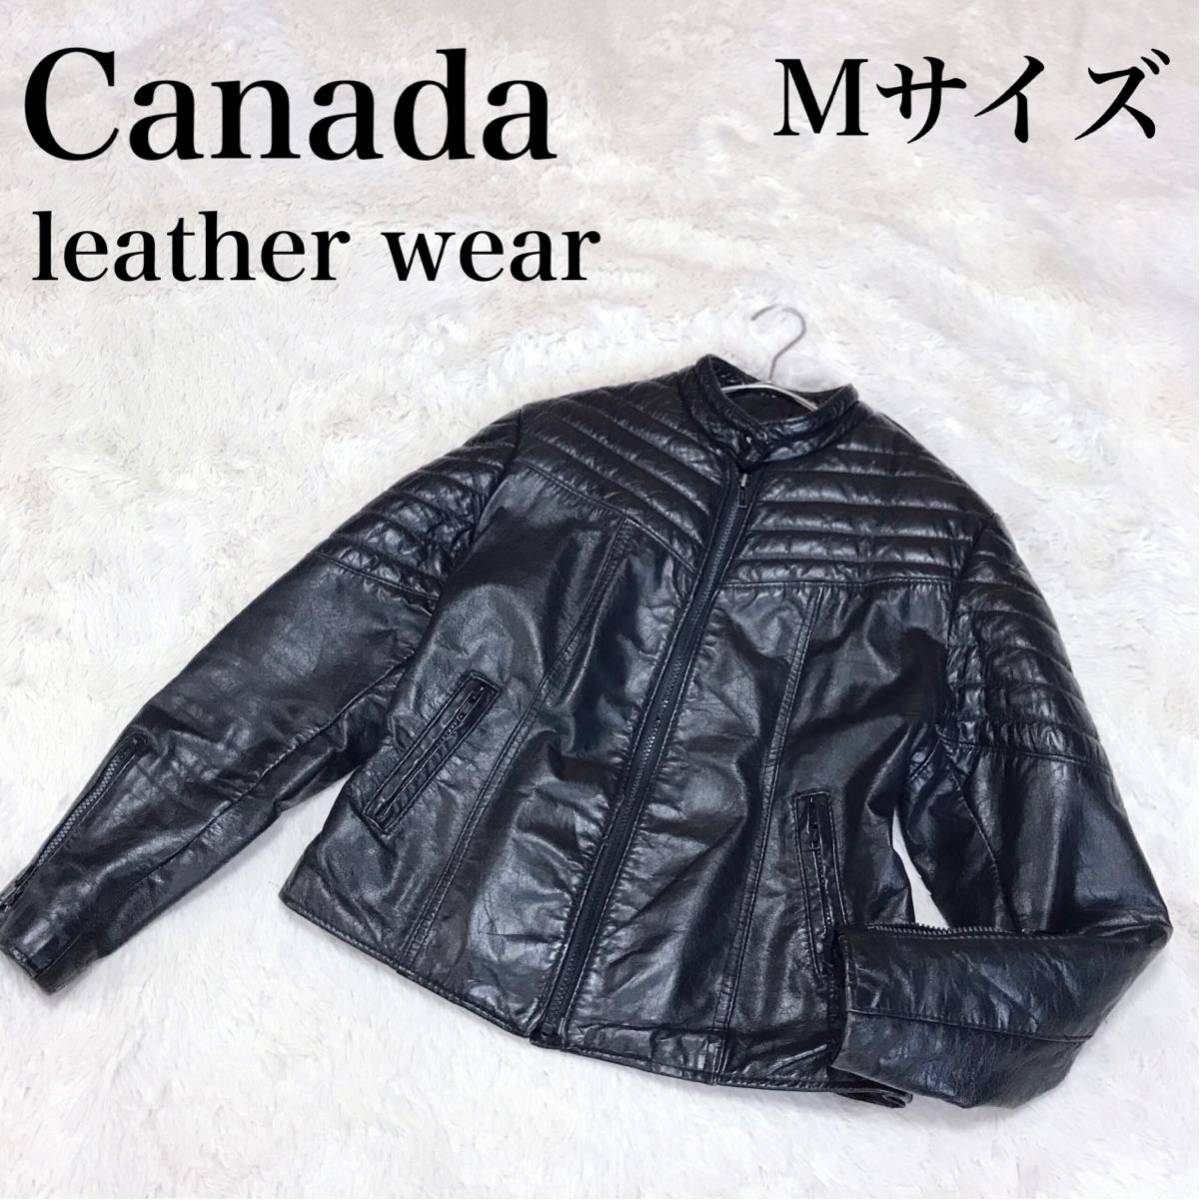 希少 Canada leather wear レザージャケット ライダース 黒 バイカー